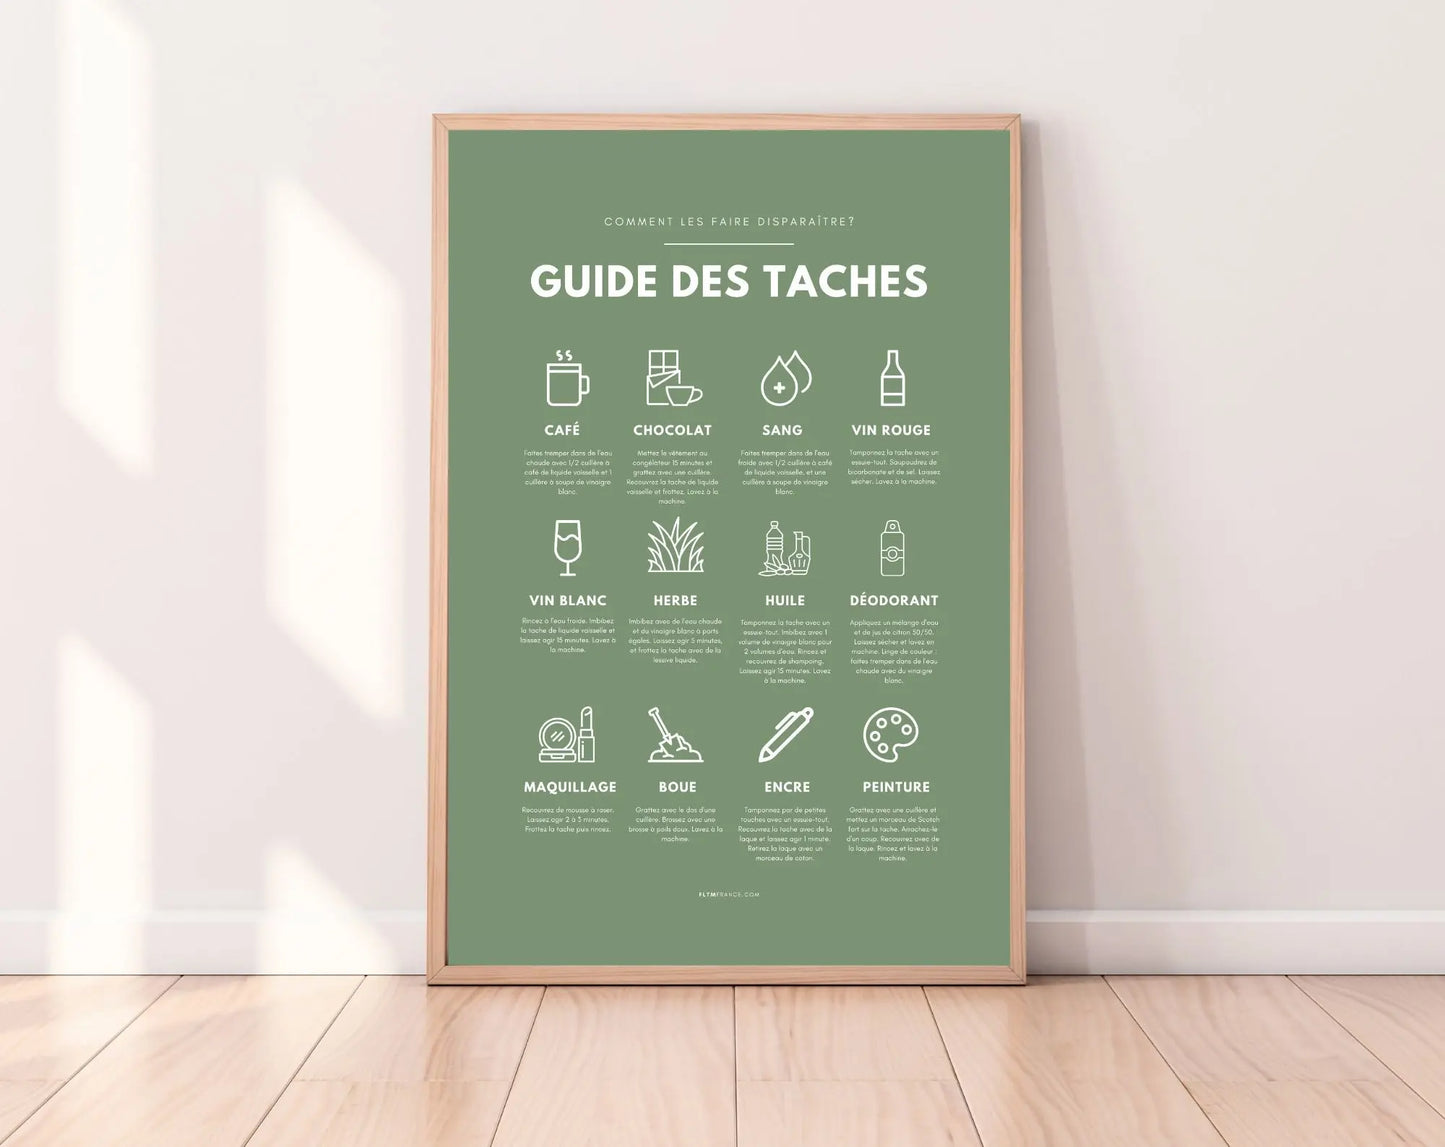 Affiche Guide des taches coloris verts - Entretien du linge enlever les taches - Poster de buanderie - Affiche à imprimer - Décoration murale buanderie FLTMfrance